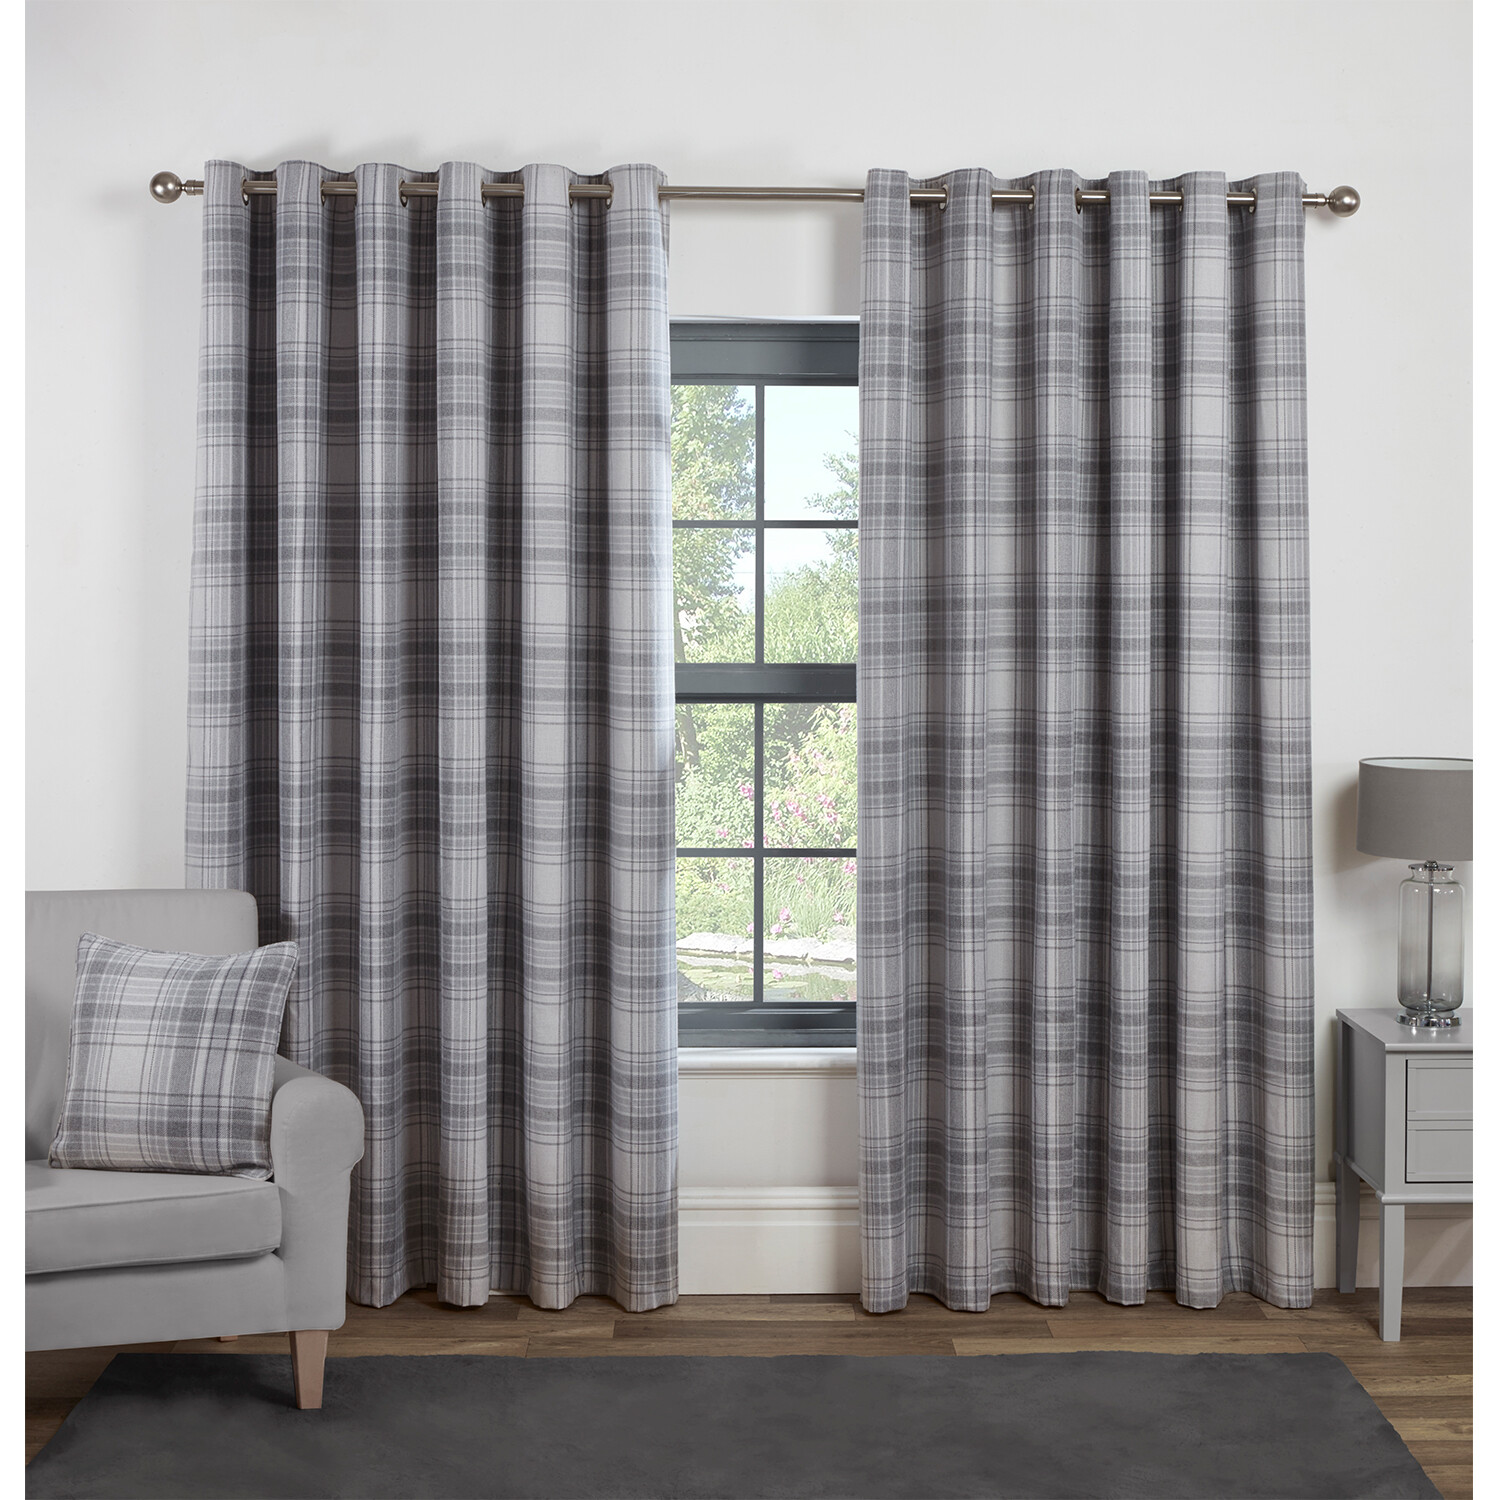 Divante Hatfield Grey Check Blackout Curtains 229 x 229cm Image 1